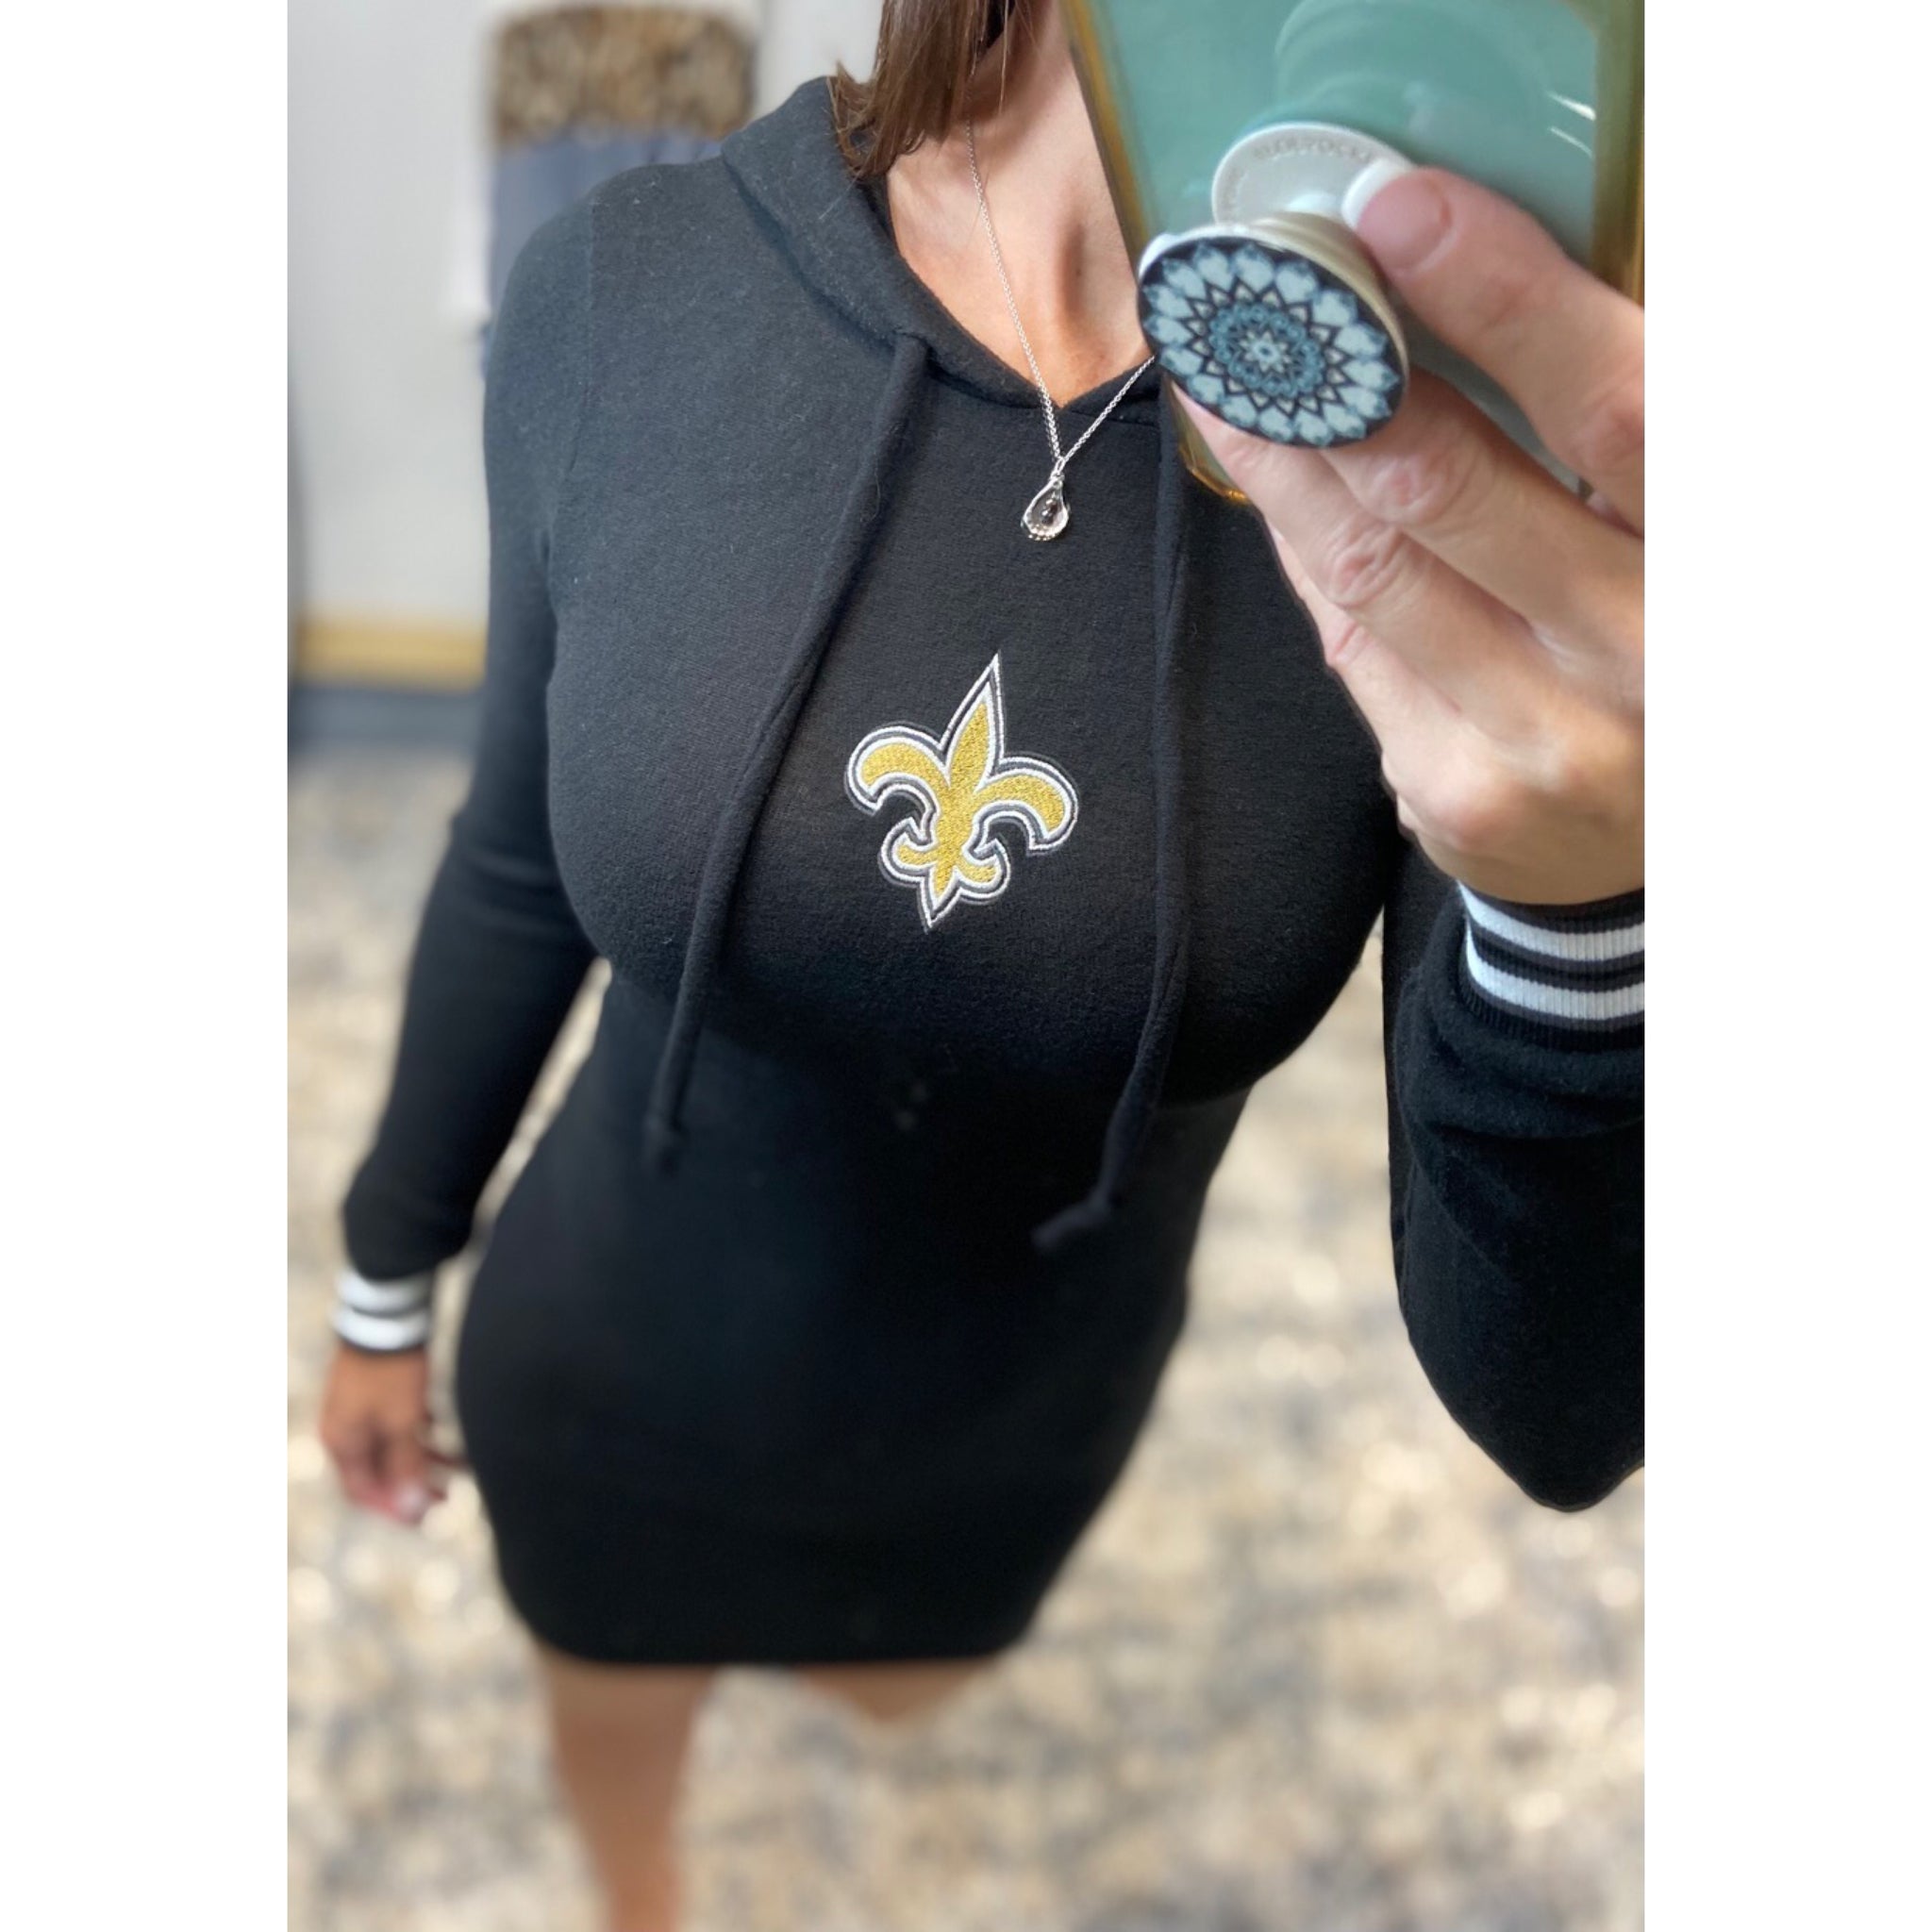 New Orleans Saints Fleur de Lis Hoodie Light Varsity Sweater Dress Black S/M/L